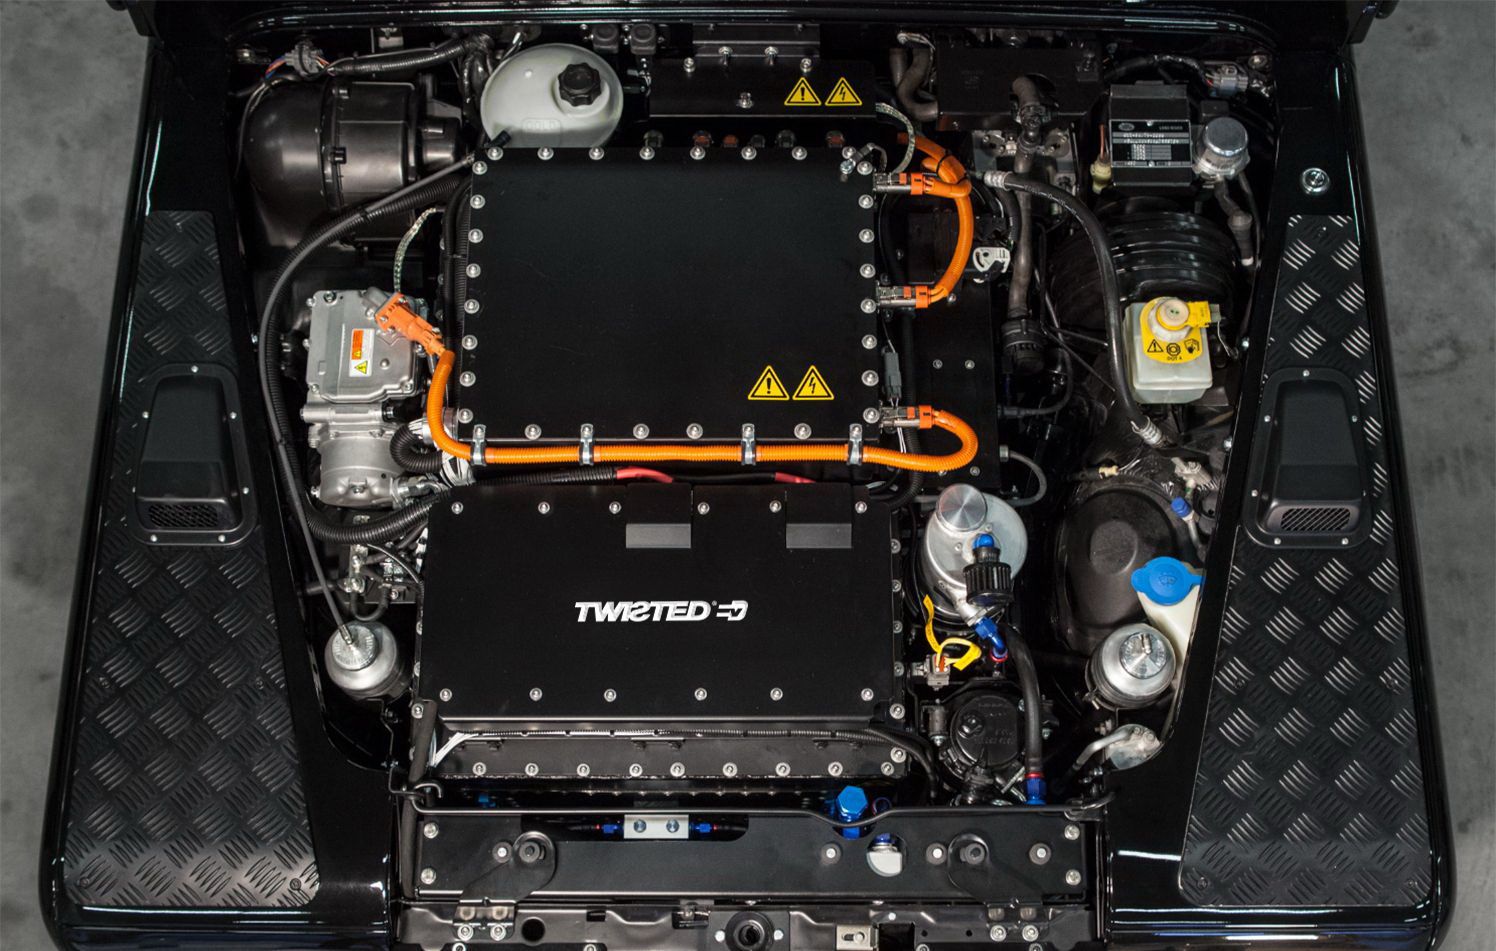 Twisted NAS-E 4 × 4 adalah Land Rover klasik bertenaga listrik.*/CARSCOOPS